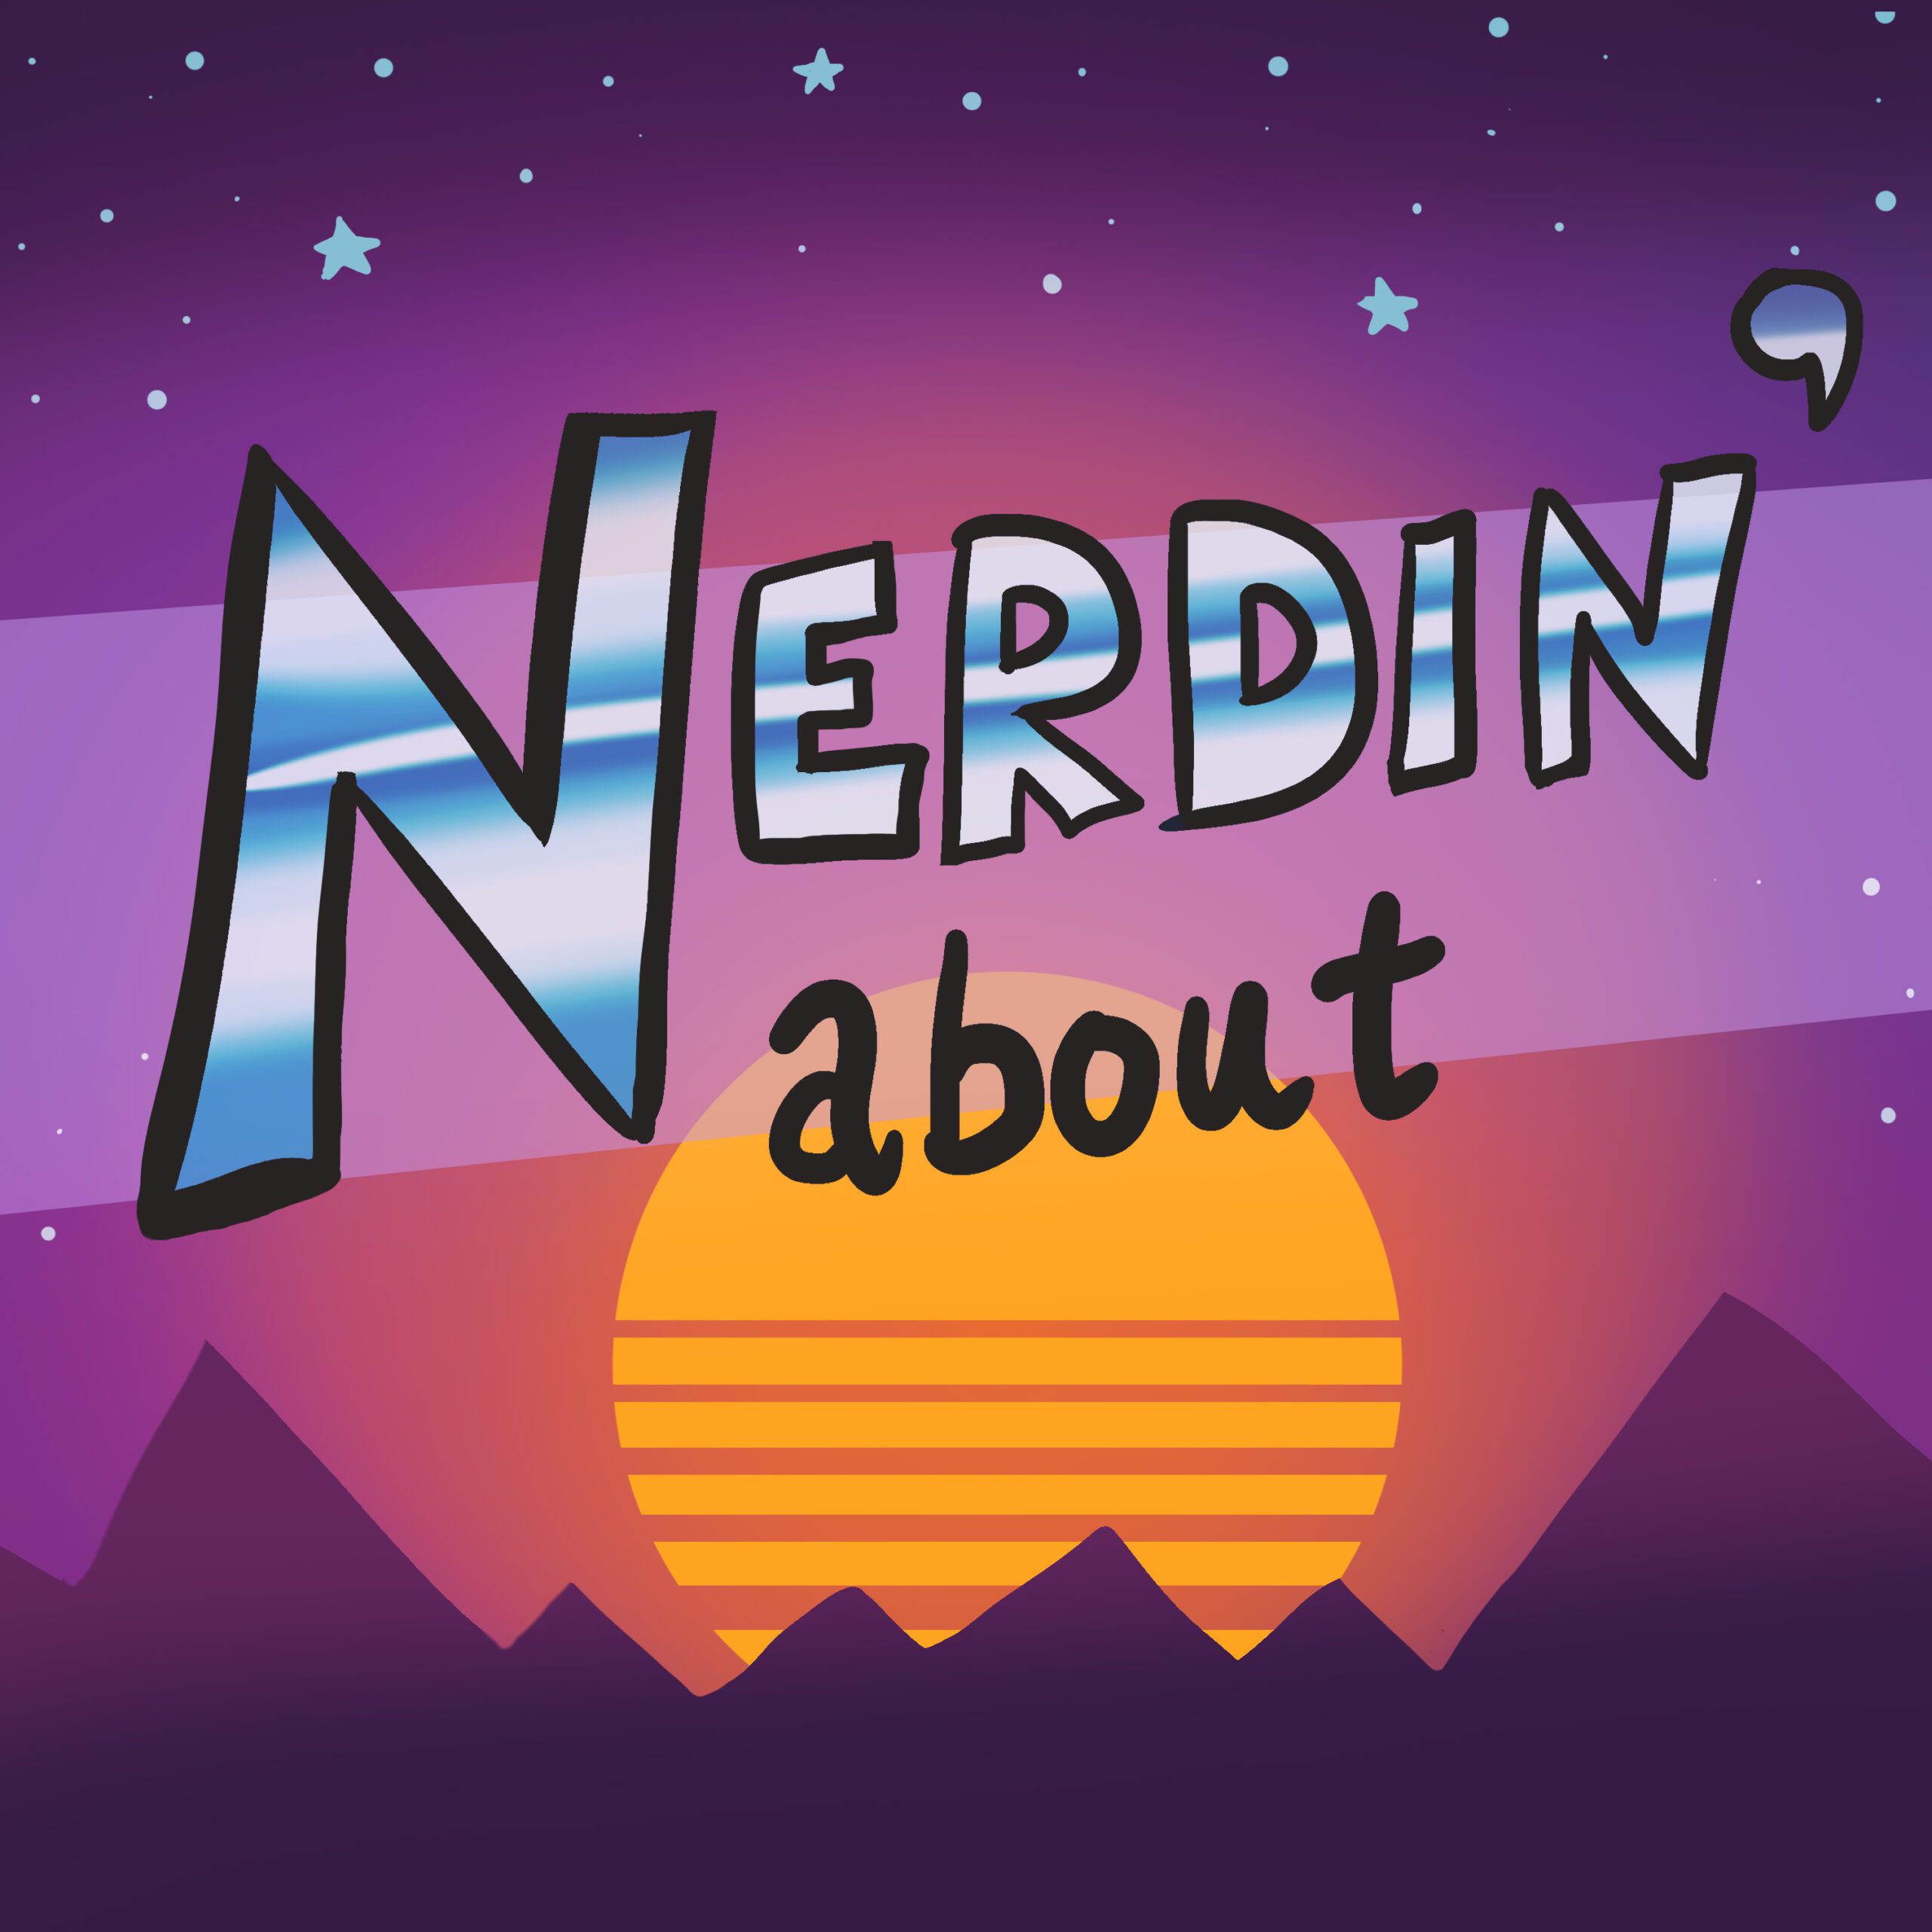 Nerdin’ About